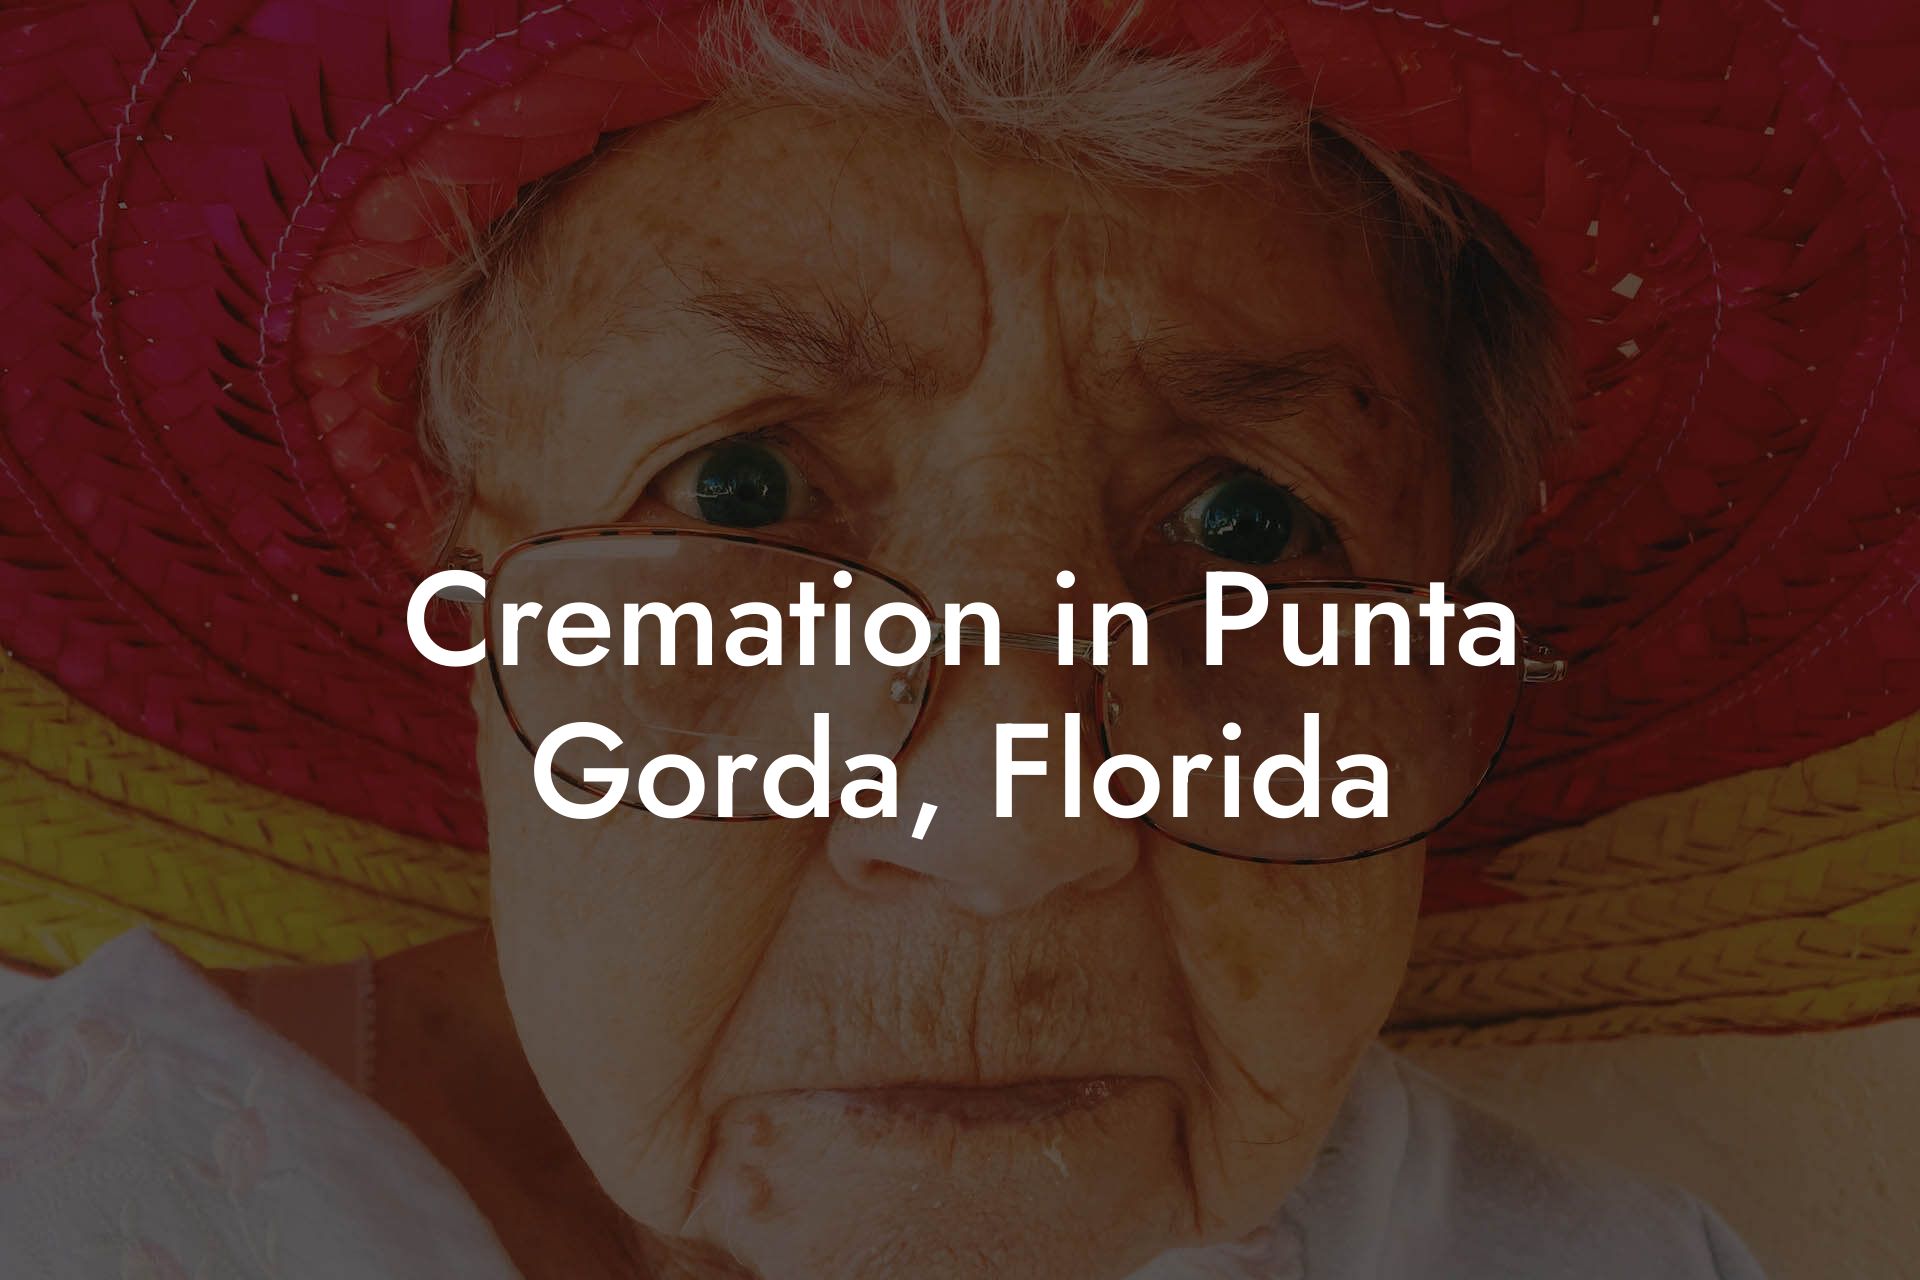 Cremation in Punta Gorda, Florida